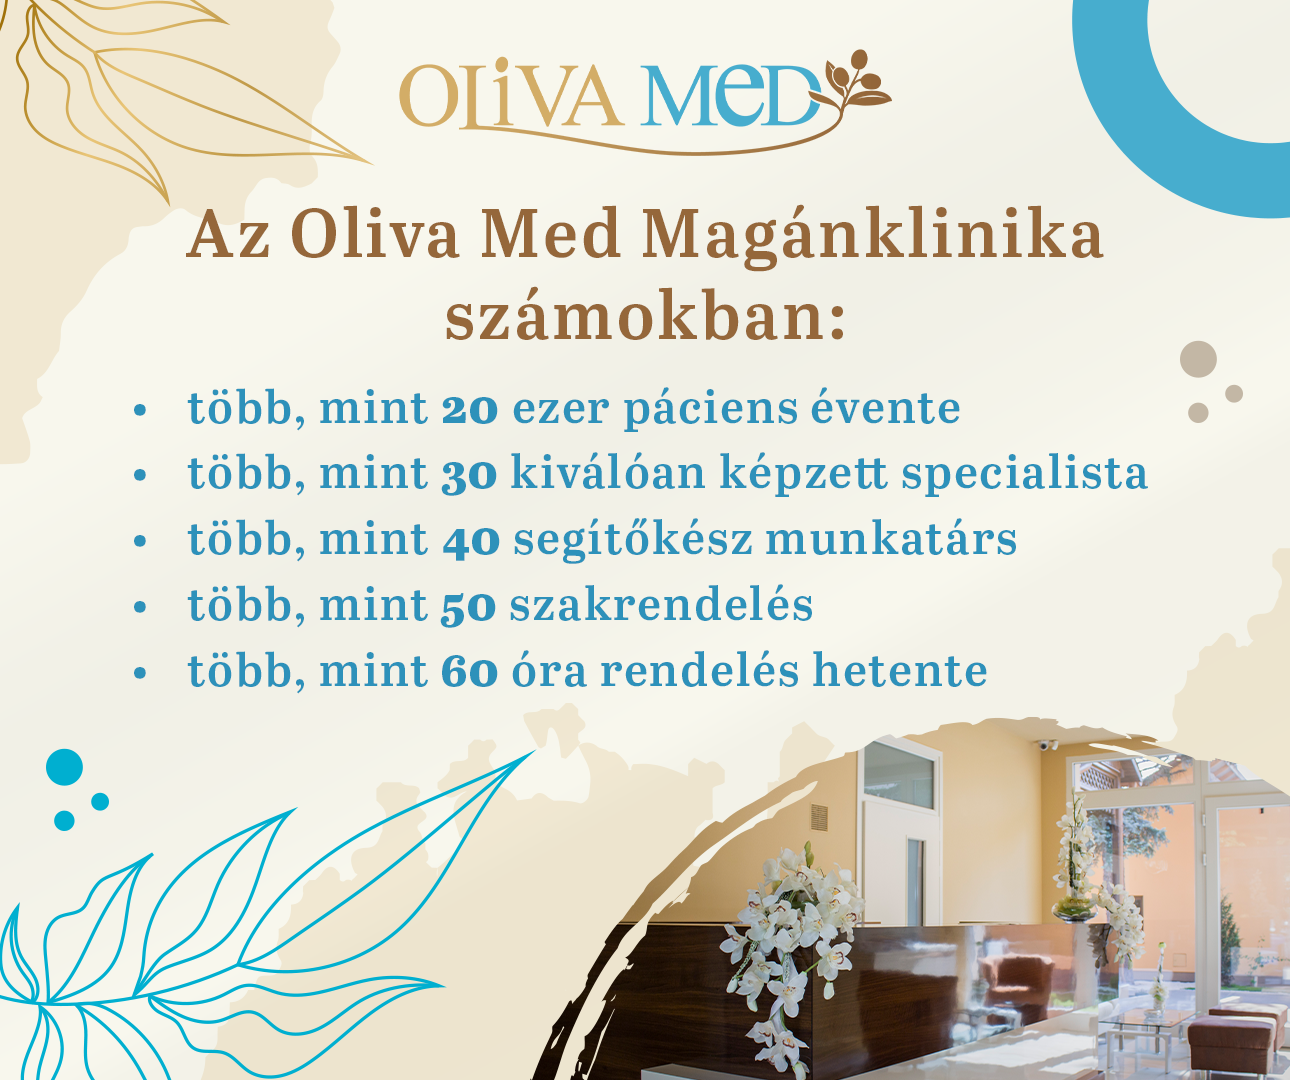 Oliva Med számokban